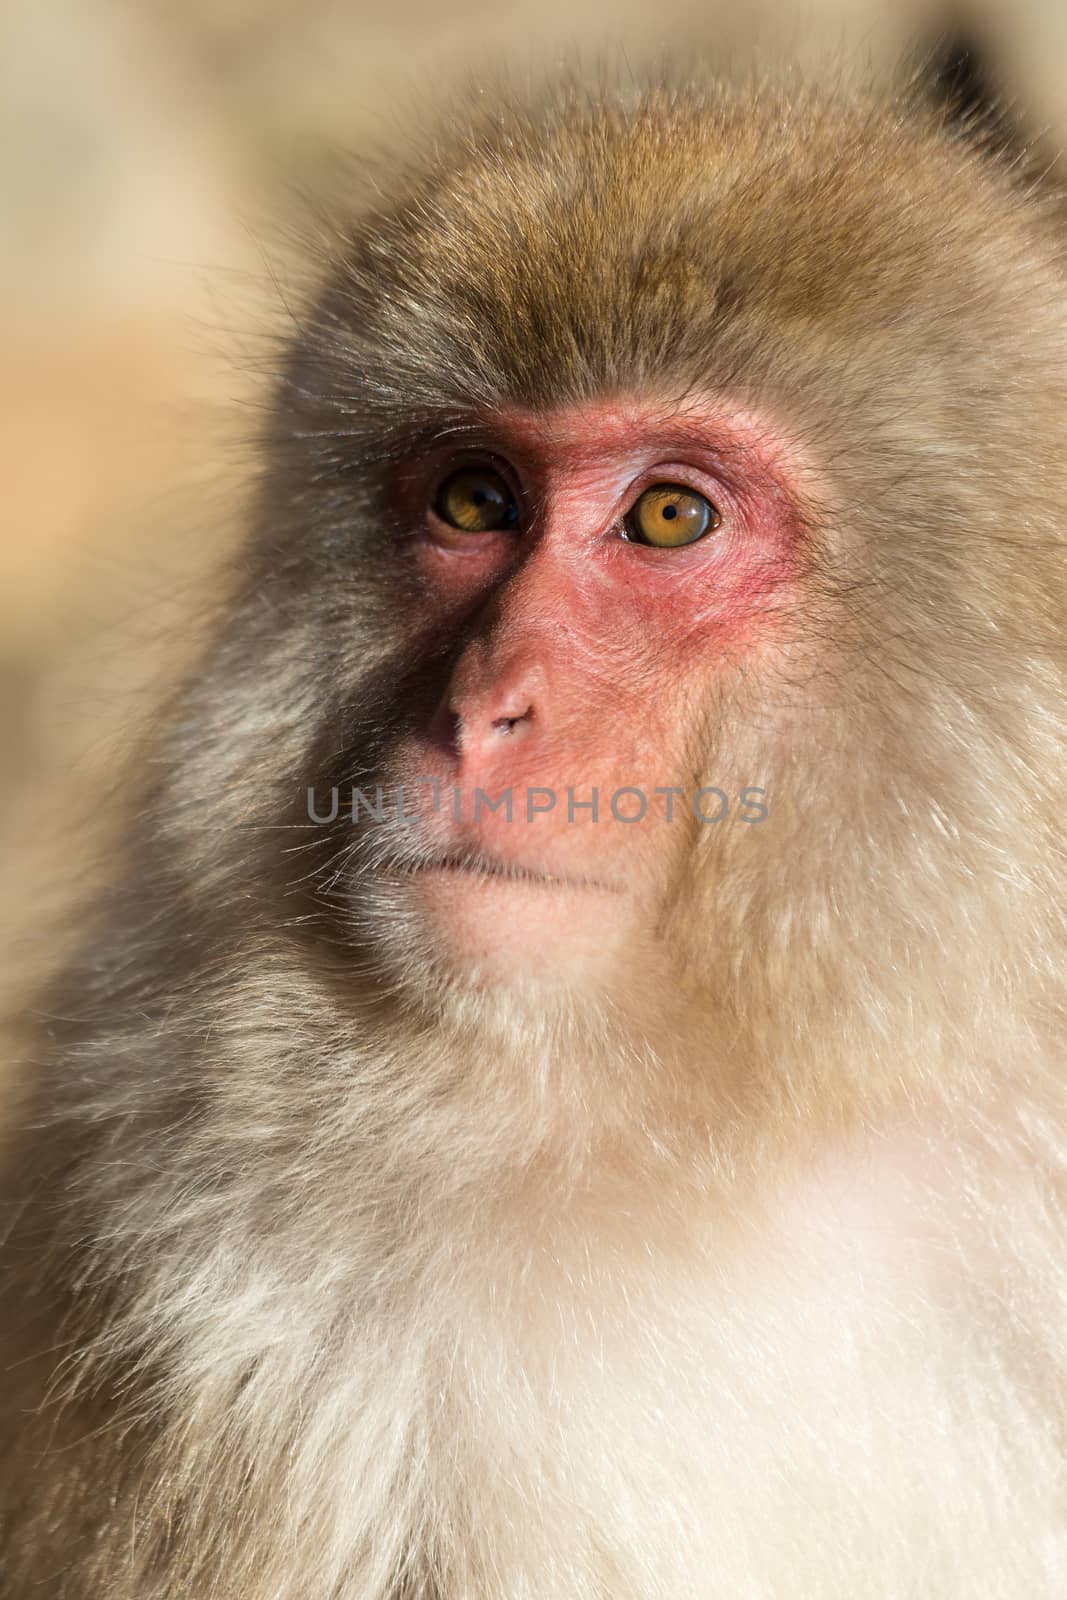 Monkey by leungchopan